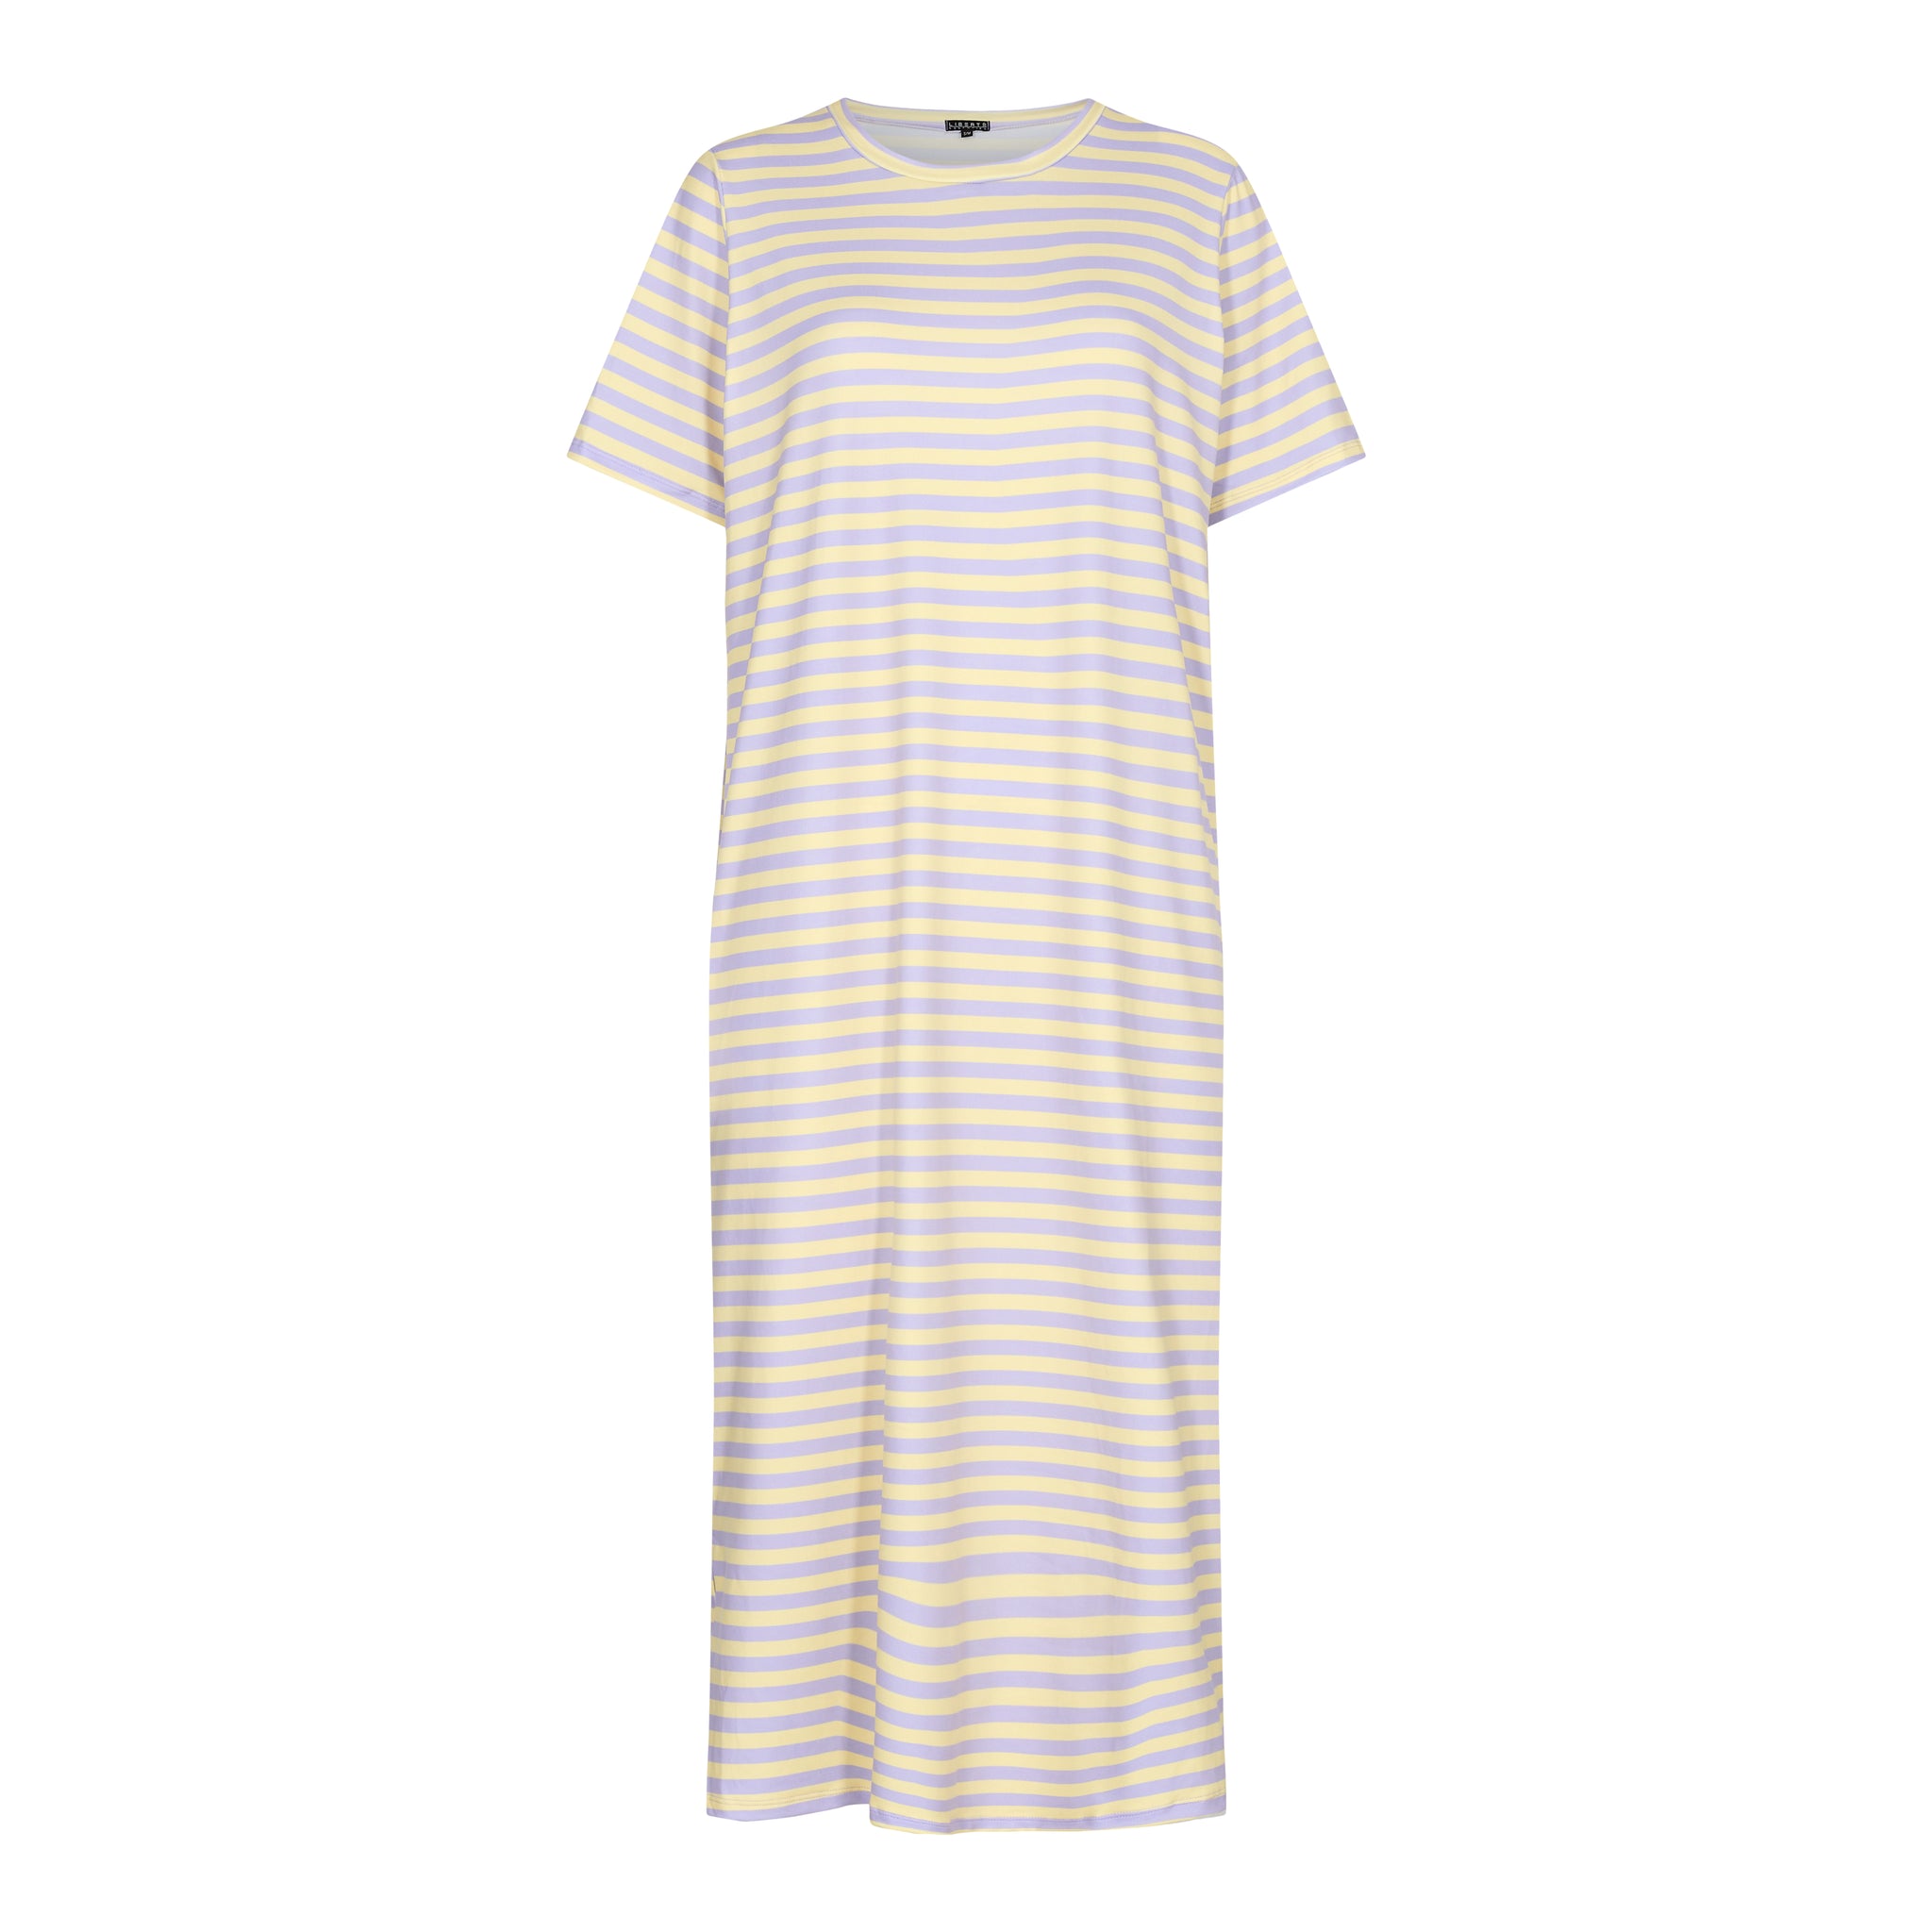 Liberté - Alma T-shirt Dress SS - Lavender Yellow Stripe